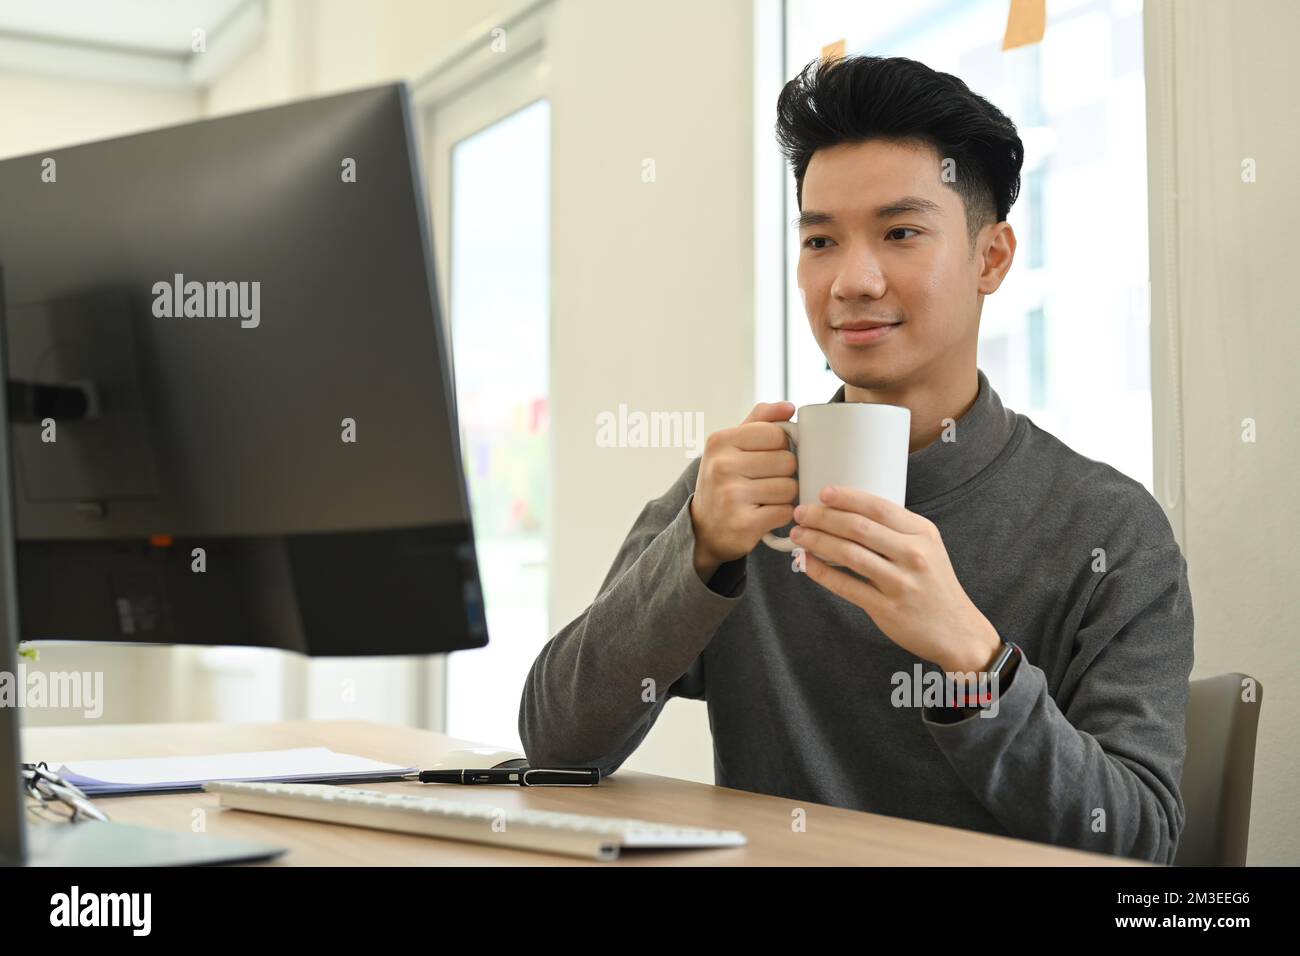 Uomo asiatico sorridente che tiene una tazza di caffè e guarda il webinar online sullo schermo del computer Foto Stock